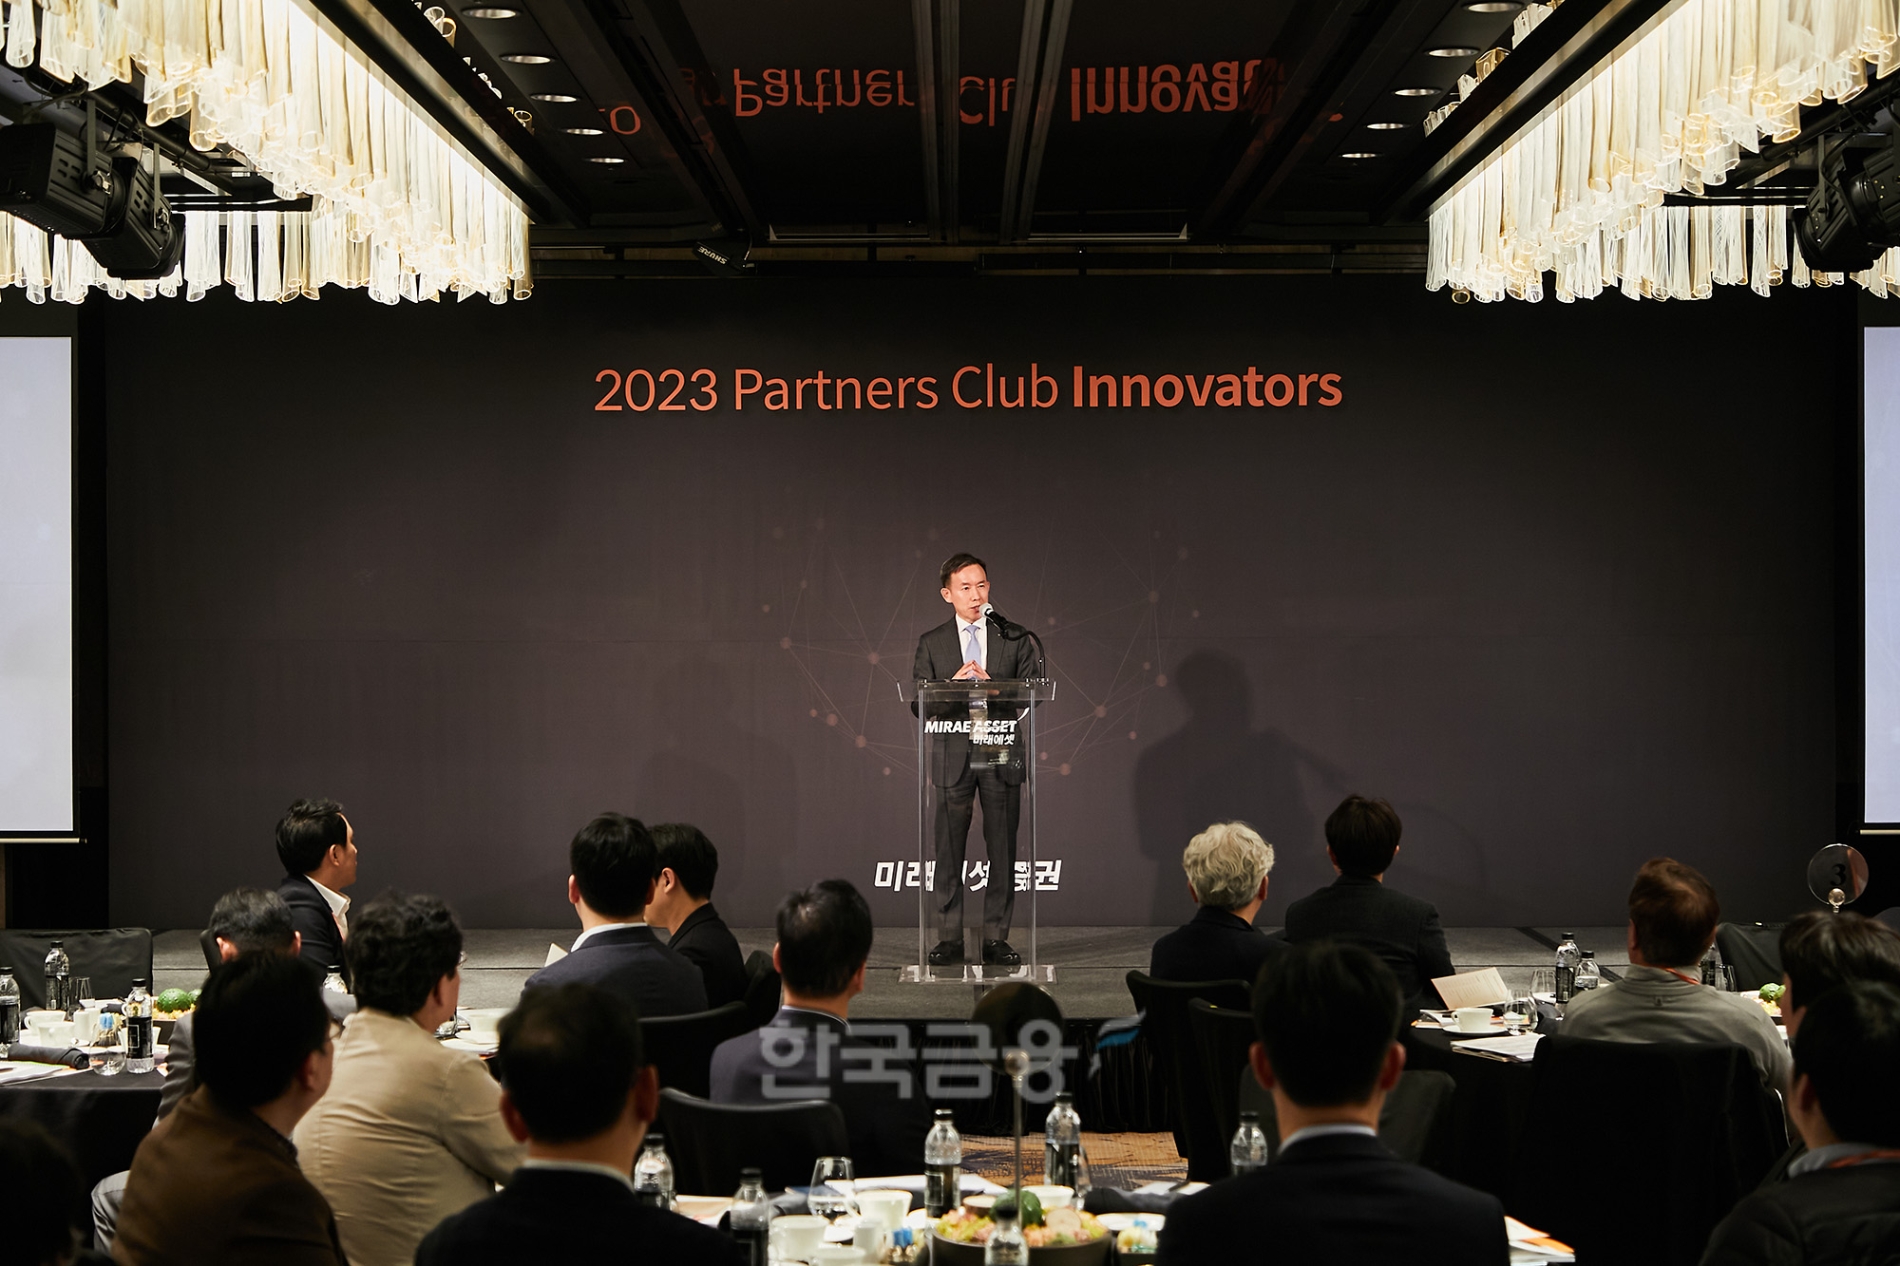 미래에셋증권(대표 최현만·이만열)이 2023년 3월 28일 서울 종로구에 있는 포시즌스 호텔에서 ‘파트너스 클럽 이노베이터’(Partners Club Innovators) 론칭 포럼(Launching Forum·개소 기념 토론)을 열고 있다./사진=미래에셋증권